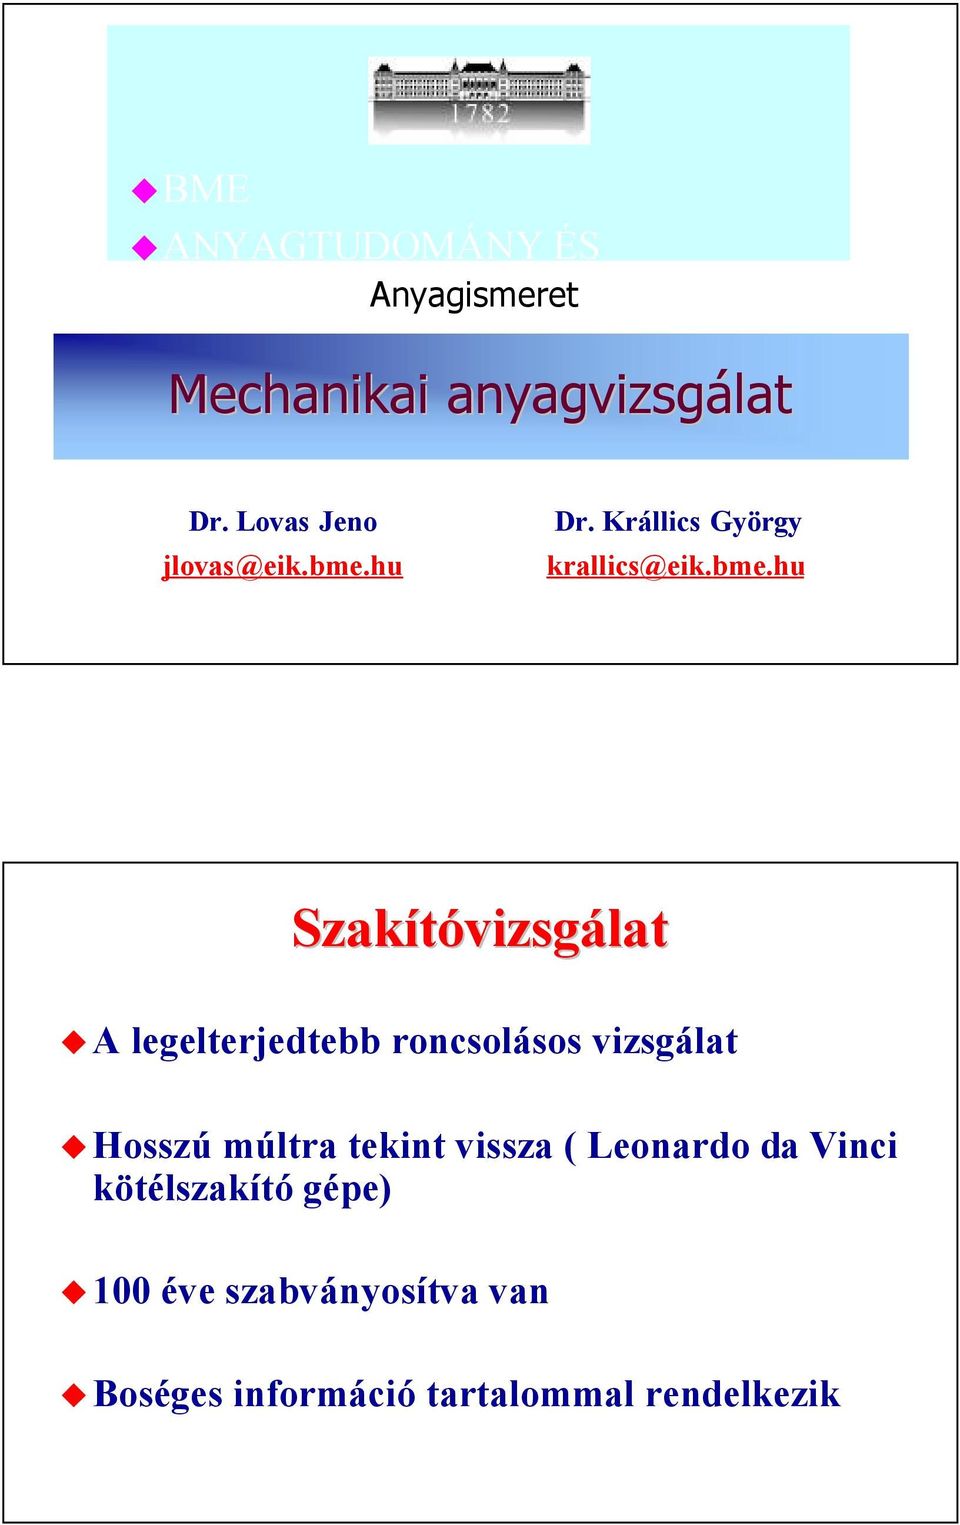 hu Dr. Krállics György krallics@eik.bme.